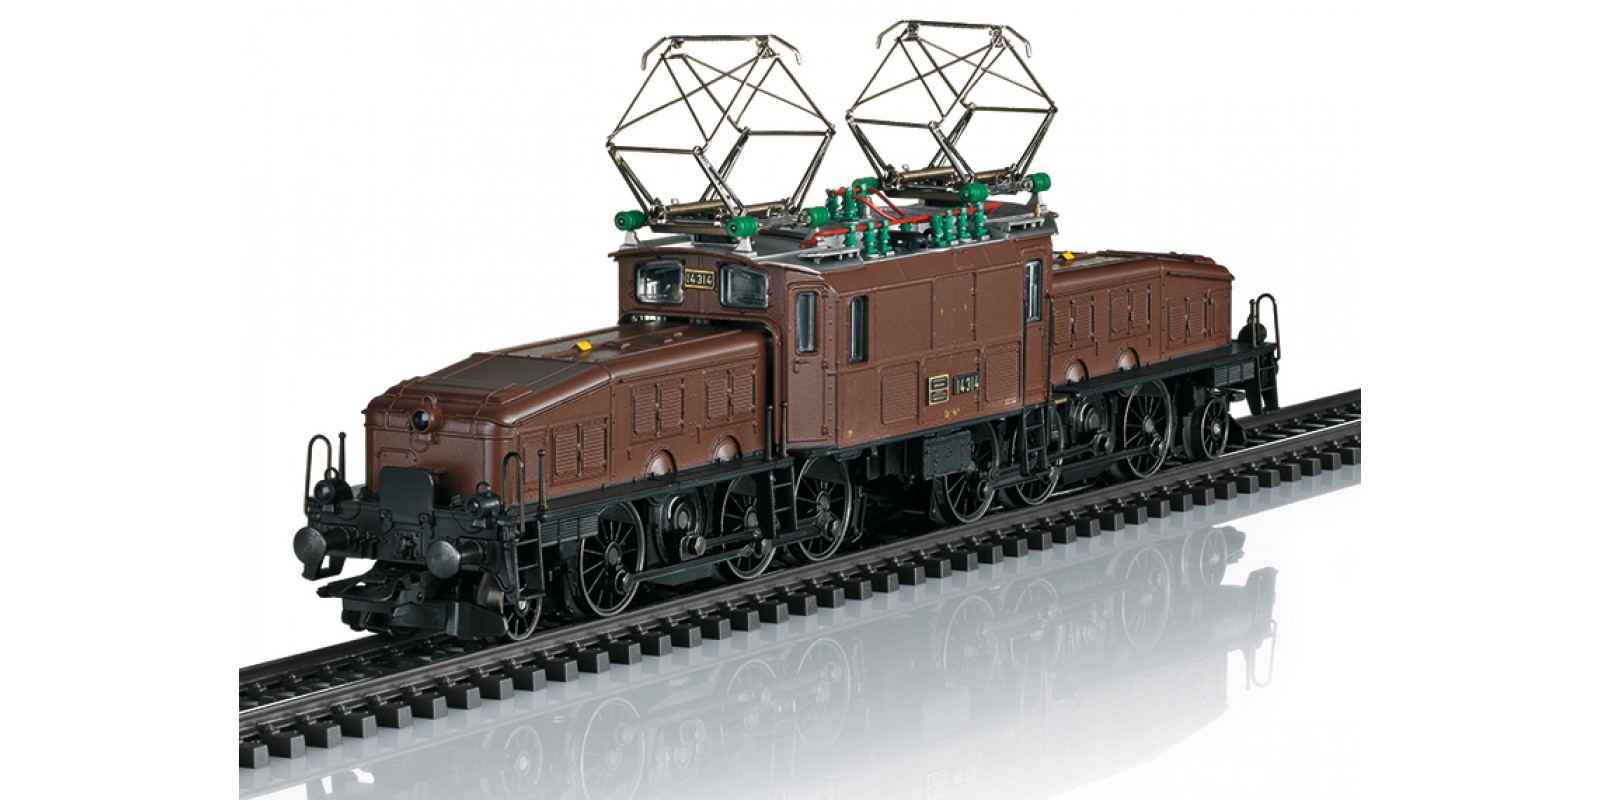 39568 Class Ce 6/8 III "Crocodile" Electric Locomotive